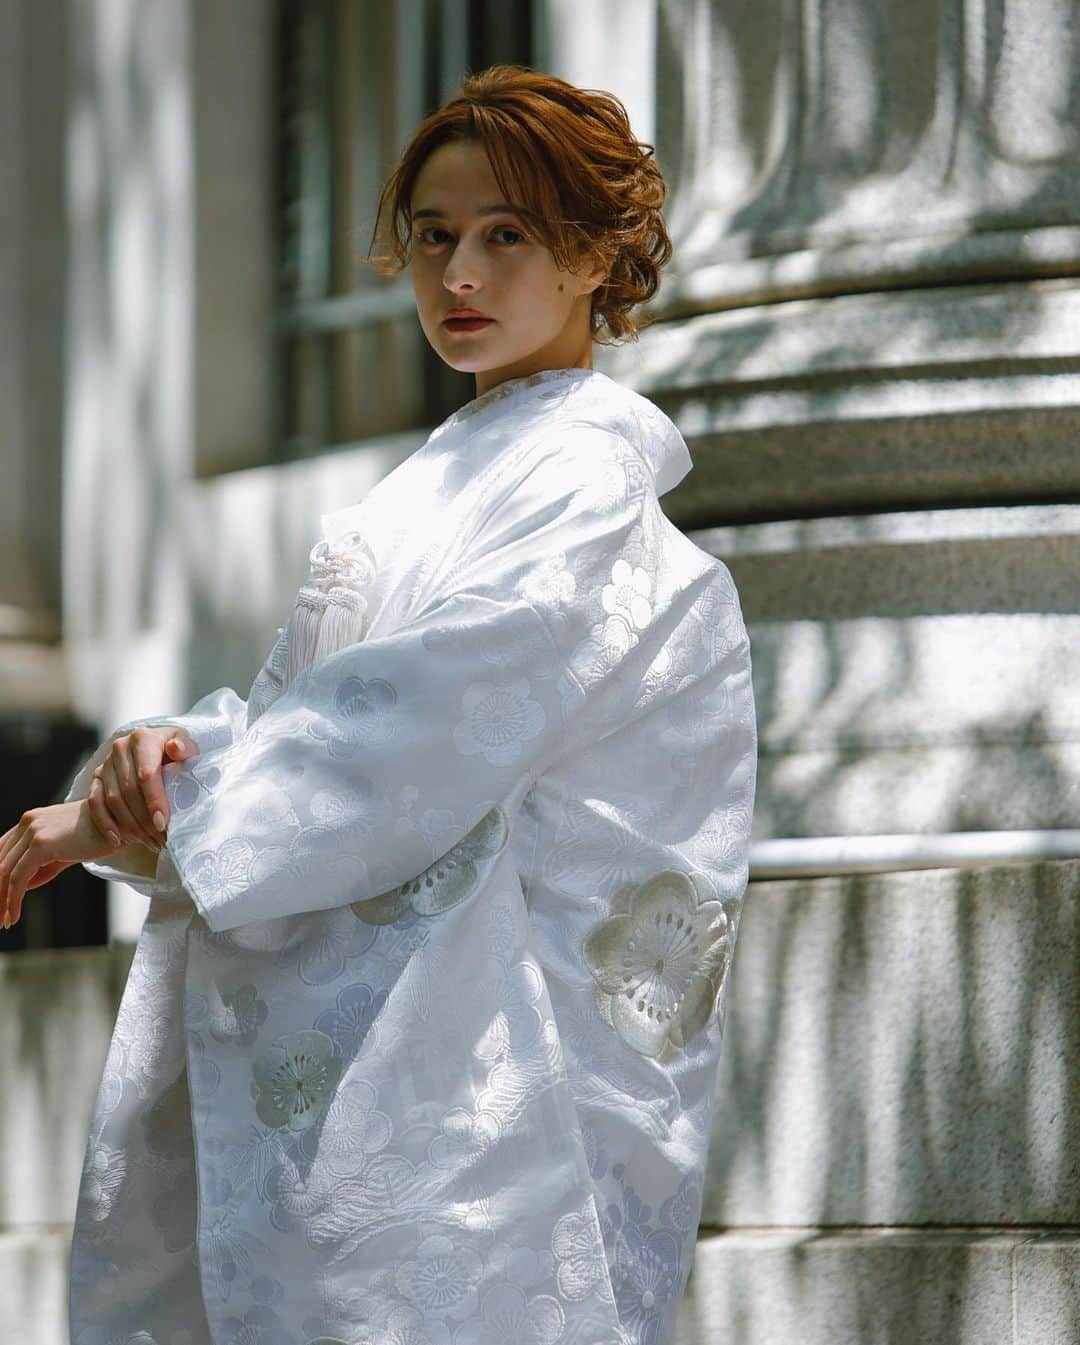 Tomoya Tamadaさんのインスタグラム写真 - (Tomoya TamadaInstagram)「【 @kimonoito 和装コラボフォトプラン 】  古典的でレトロな王道和装スタイルから、形式に捉われないファッション性の高いモダンなスタイルまで、お二人の個性を活かした特別なお写真をご提案させていただきます。  ●コラボフォトプラン内容  ・スタジオ撮影 or ロケーション撮影 ・新婦様衣裳 1式 (白無垢、色打掛、引き振袖から1点) ・新郎様衣裳 1式 (黒紋服、色紋服から1点) ・ヘアメイク&着付け ・ブーケ/ヘッドドレス ・撮影(100カット以上〜)  ＊白無垢＋色打掛の和装2点のプランもありますのでお気軽にお問い合わせ下さいませ。  こちらのコラボプランでは、 @masashiro_hosaka  @tama_hairmake が担当させて頂きます。  ●お問い合わせ @kimonoitoのハイライトにあります、 ラインアカウントQRコードを読み込んで頂き、 ご連絡お待ちしております。  上記以外のお問い合わせ先は  ・kimono絲HP ・TEL:0368211710  こちらまで、宜しくお願い致します。  ご質問・ご相談は【お問い合わせ】フォームまで お気軽にご連絡くださいませ。  ＿＿＿＿＿＿＿＿＿＿＿＿＿＿＿＿＿＿＿＿＿＿＿＿＿＿  【 現在、募集中のセミナー 】  ●6月13日(火曜日)  東京  ●6月19日(月曜日)  名古屋  ●6月20日(火曜日)  名古屋  ●7月10日(月曜日)  岡山  ●7月11日(火曜日)  岡山  当日の詳細、ご応募に関しましてはホームページの 「セミナー告知」に記載しておりますので ご応募お待ちしております☺︎  ＿＿＿＿＿＿＿＿＿＿＿＿＿＿＿＿＿＿＿＿＿＿＿＿＿＿  開催告知しているセミナー以外でも 個人様、企業様へ向けた臨店講習も行なっております。 臨店講習のお問い合わせは、こちらから宜しくお願い致します。  LINE ID ➡️ @ntb4770x  雑誌、広告、web撮影などのご依頼もお気軽にお問い合わせ下さいませ。 ご依頼に関するお問い合わせは、ホームページの 「お問い合わせ」からご連絡お待ちしております。  #ウェディング#ブライダル#花嫁#結婚式#結婚式準備#前撮り#和装#和装前撮り#weddingphoto#ウェディングフォト#プレ花嫁#プレ花嫁さんと繋がりたい#プレ花嫁準備#2023春婚#2023夏婚#2023秋婚#鹿児島花嫁#東京花嫁#ウェディングヘア#ブライダルヘア#ヘアアレンジ#ヘアメイク#花嫁ヘア#ウェディングドレス#weddinghair#bridalhair#新娘化妝#新娘秘書#新娘髮型#웨딩」5月27日 11時57分 - tama_hairmake